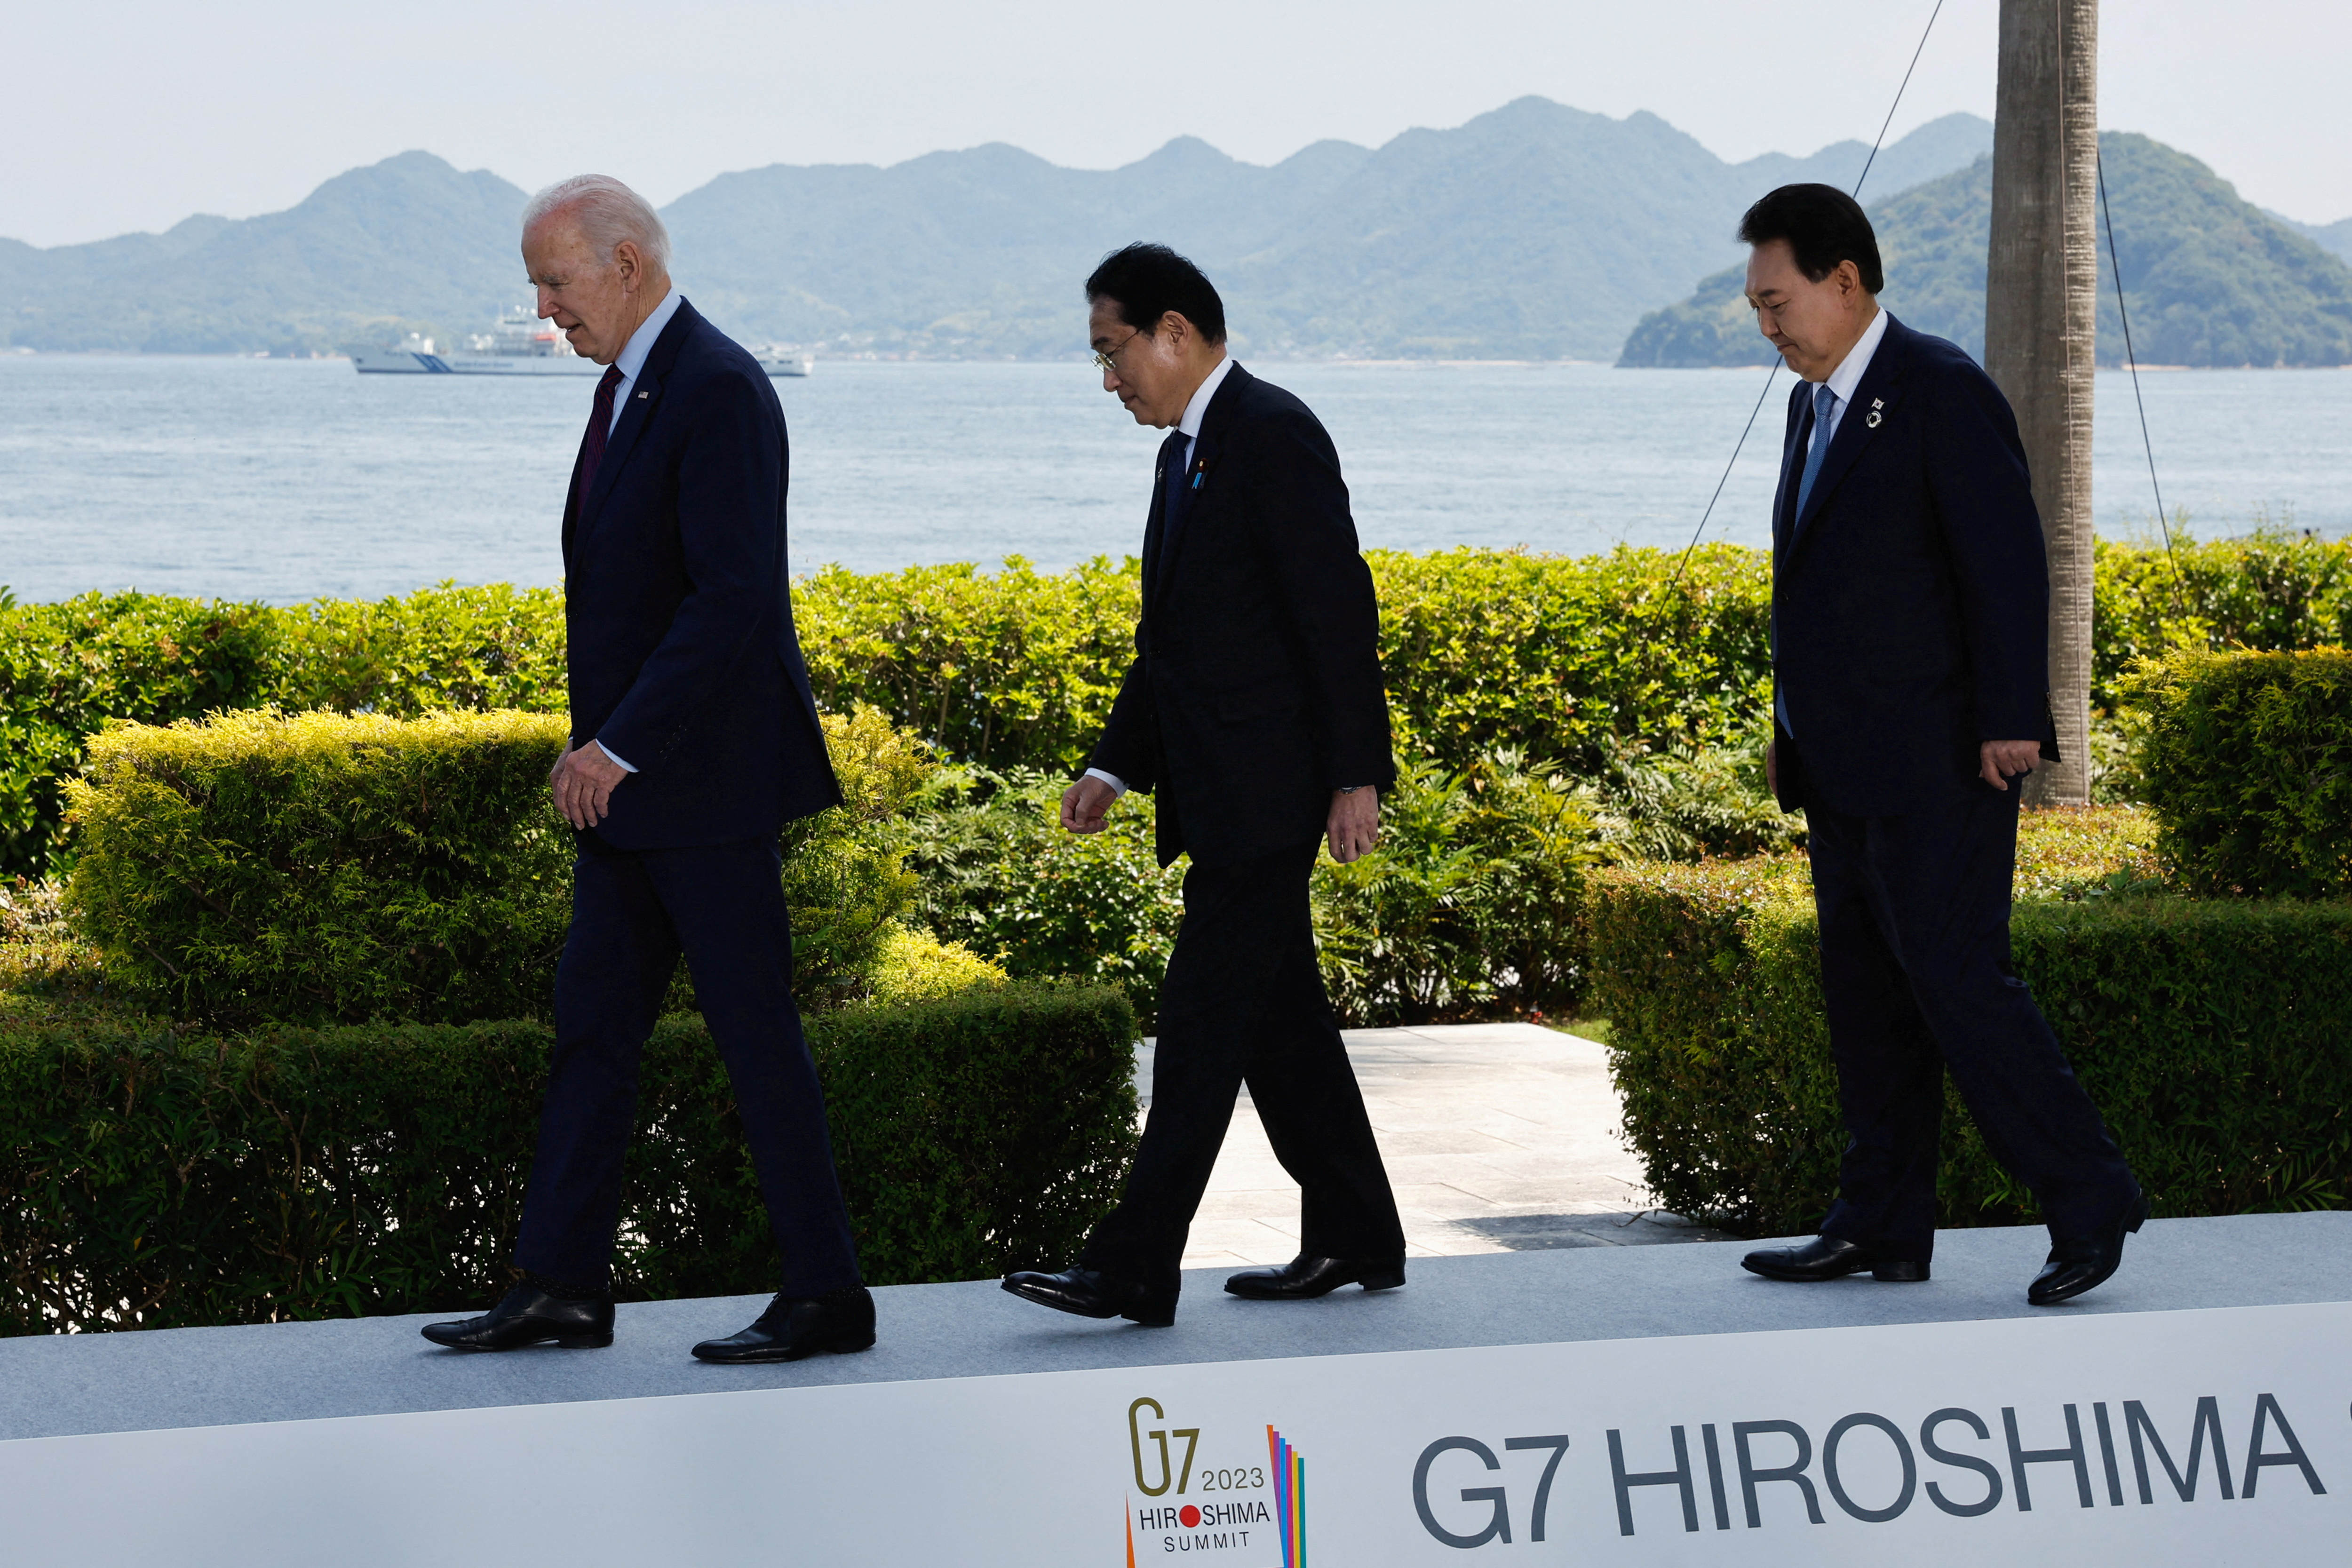 Estados Unidos, Japón y Corea del Sur acordaron elevar la cooperación trilateral “a un nuevo nivel” por las amenazas de Kim Jong-un